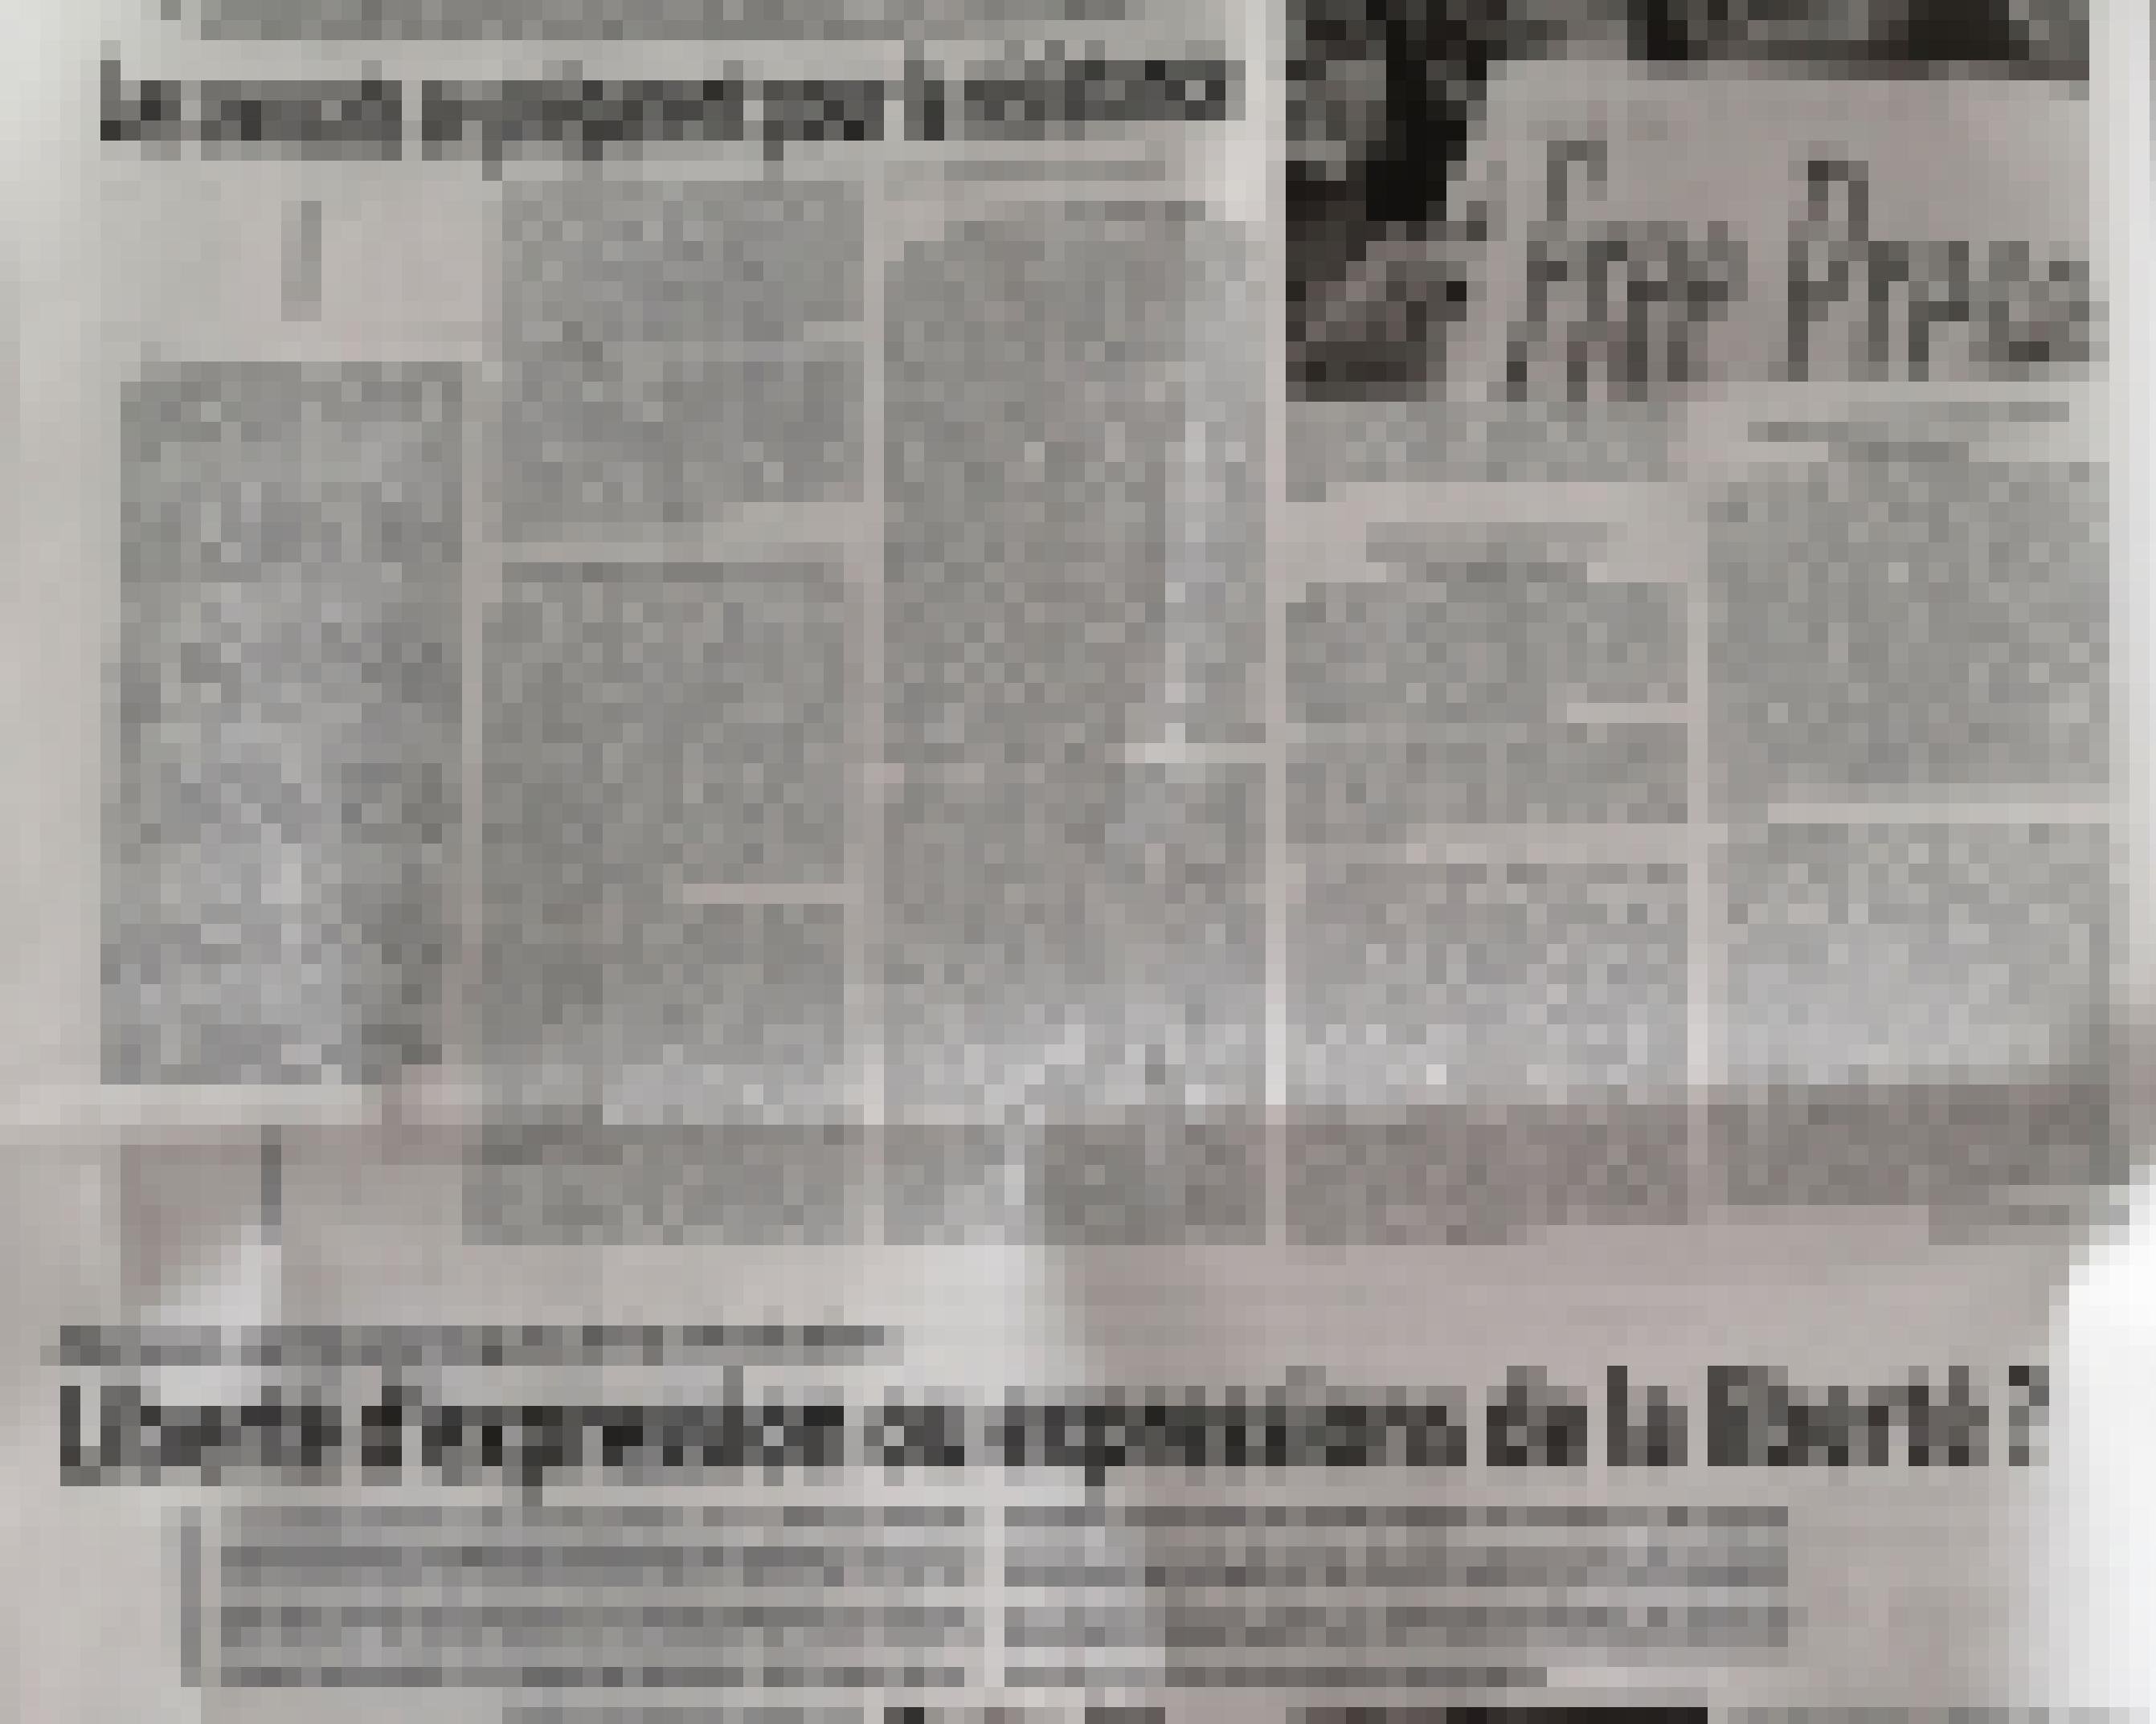 Ausschnitt aus einer Zeitungsseite in schwarz-weiß, auf der auf einem Bild eine Frau mit einem Schild mit der Aufschrift „Free Press“ zu sehen ist und einer Schlagzeile zu Meinungsfreiheit